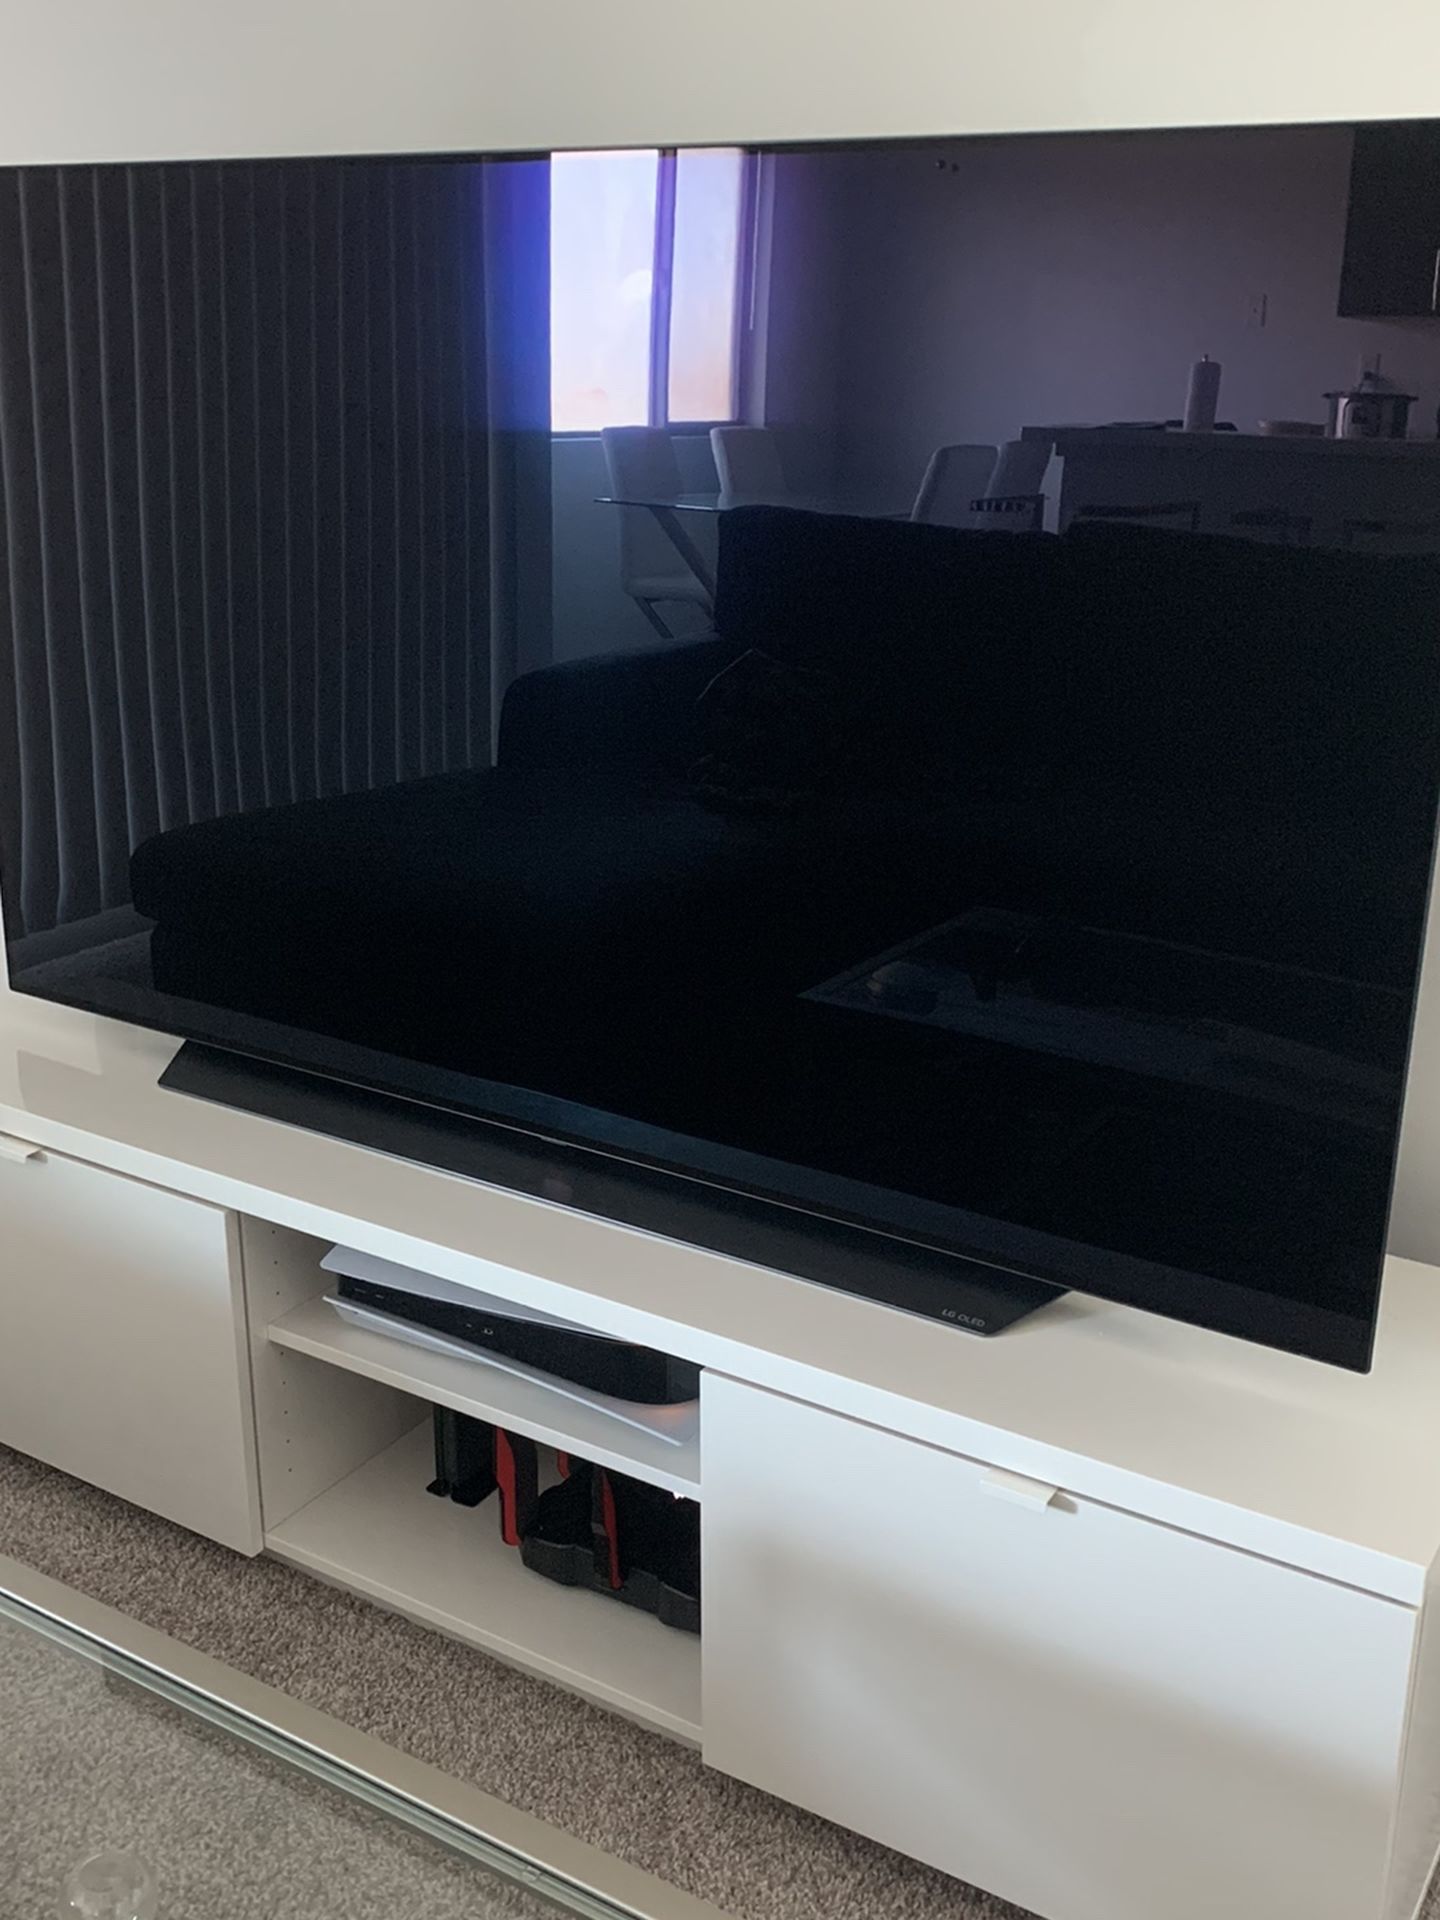 2020 LG CX 65 inch Class 4K Smart OLED TV w/ AI ThinQ